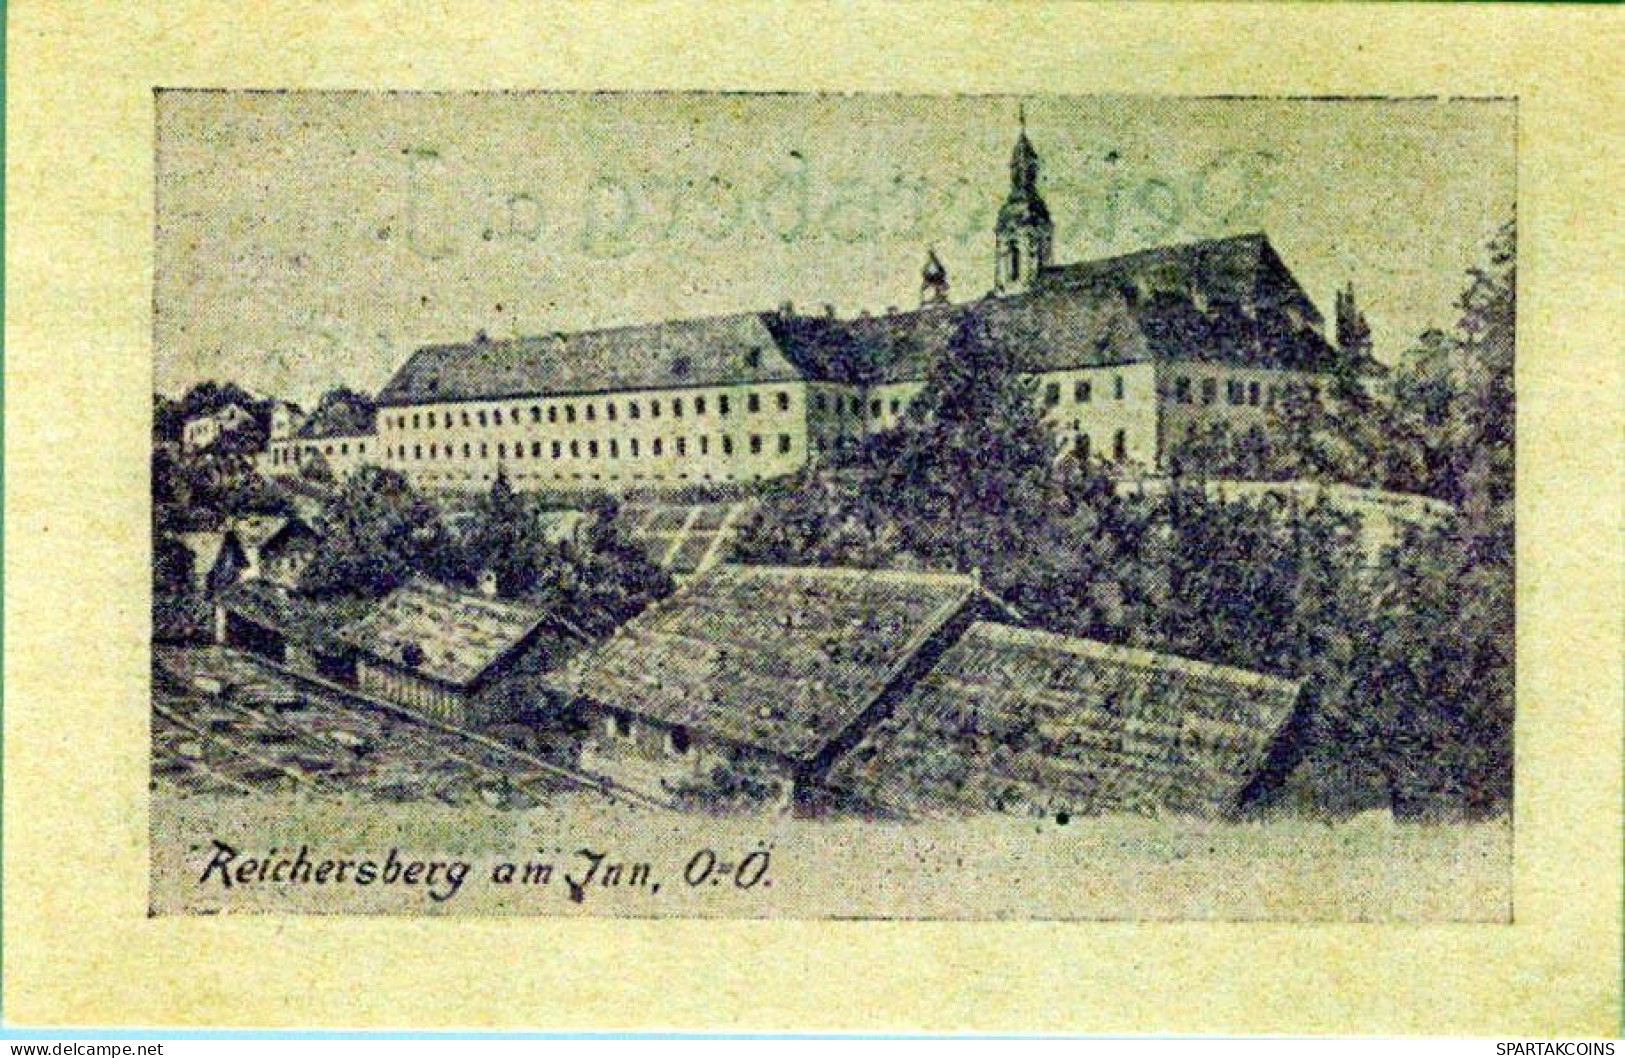 50 HELLER 1920 Stadt REICHERSBERG Oberösterreich Österreich Notgeld #PD953 - [11] Emissions Locales